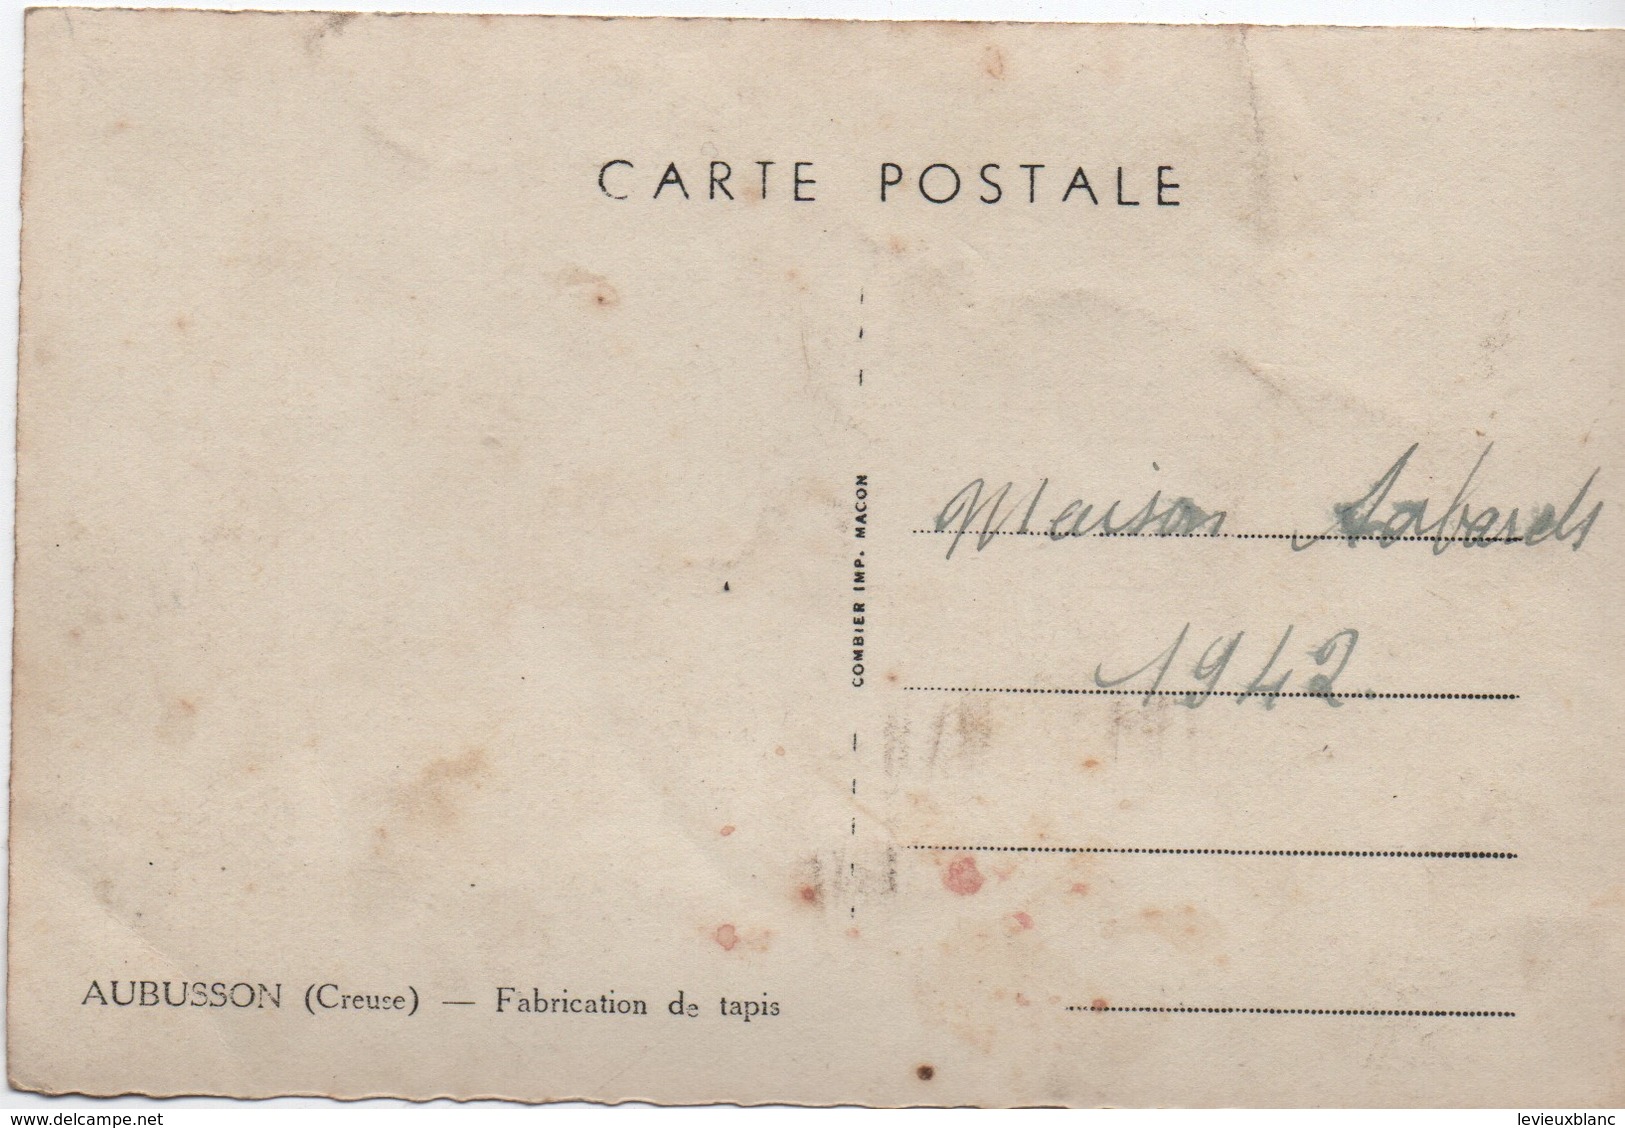 Carte Postale Ancienne / AUBUSSON/ Creuse/Fabrication De Tapis/ Maison Sabards/1942    PHOTN387 - Métiers